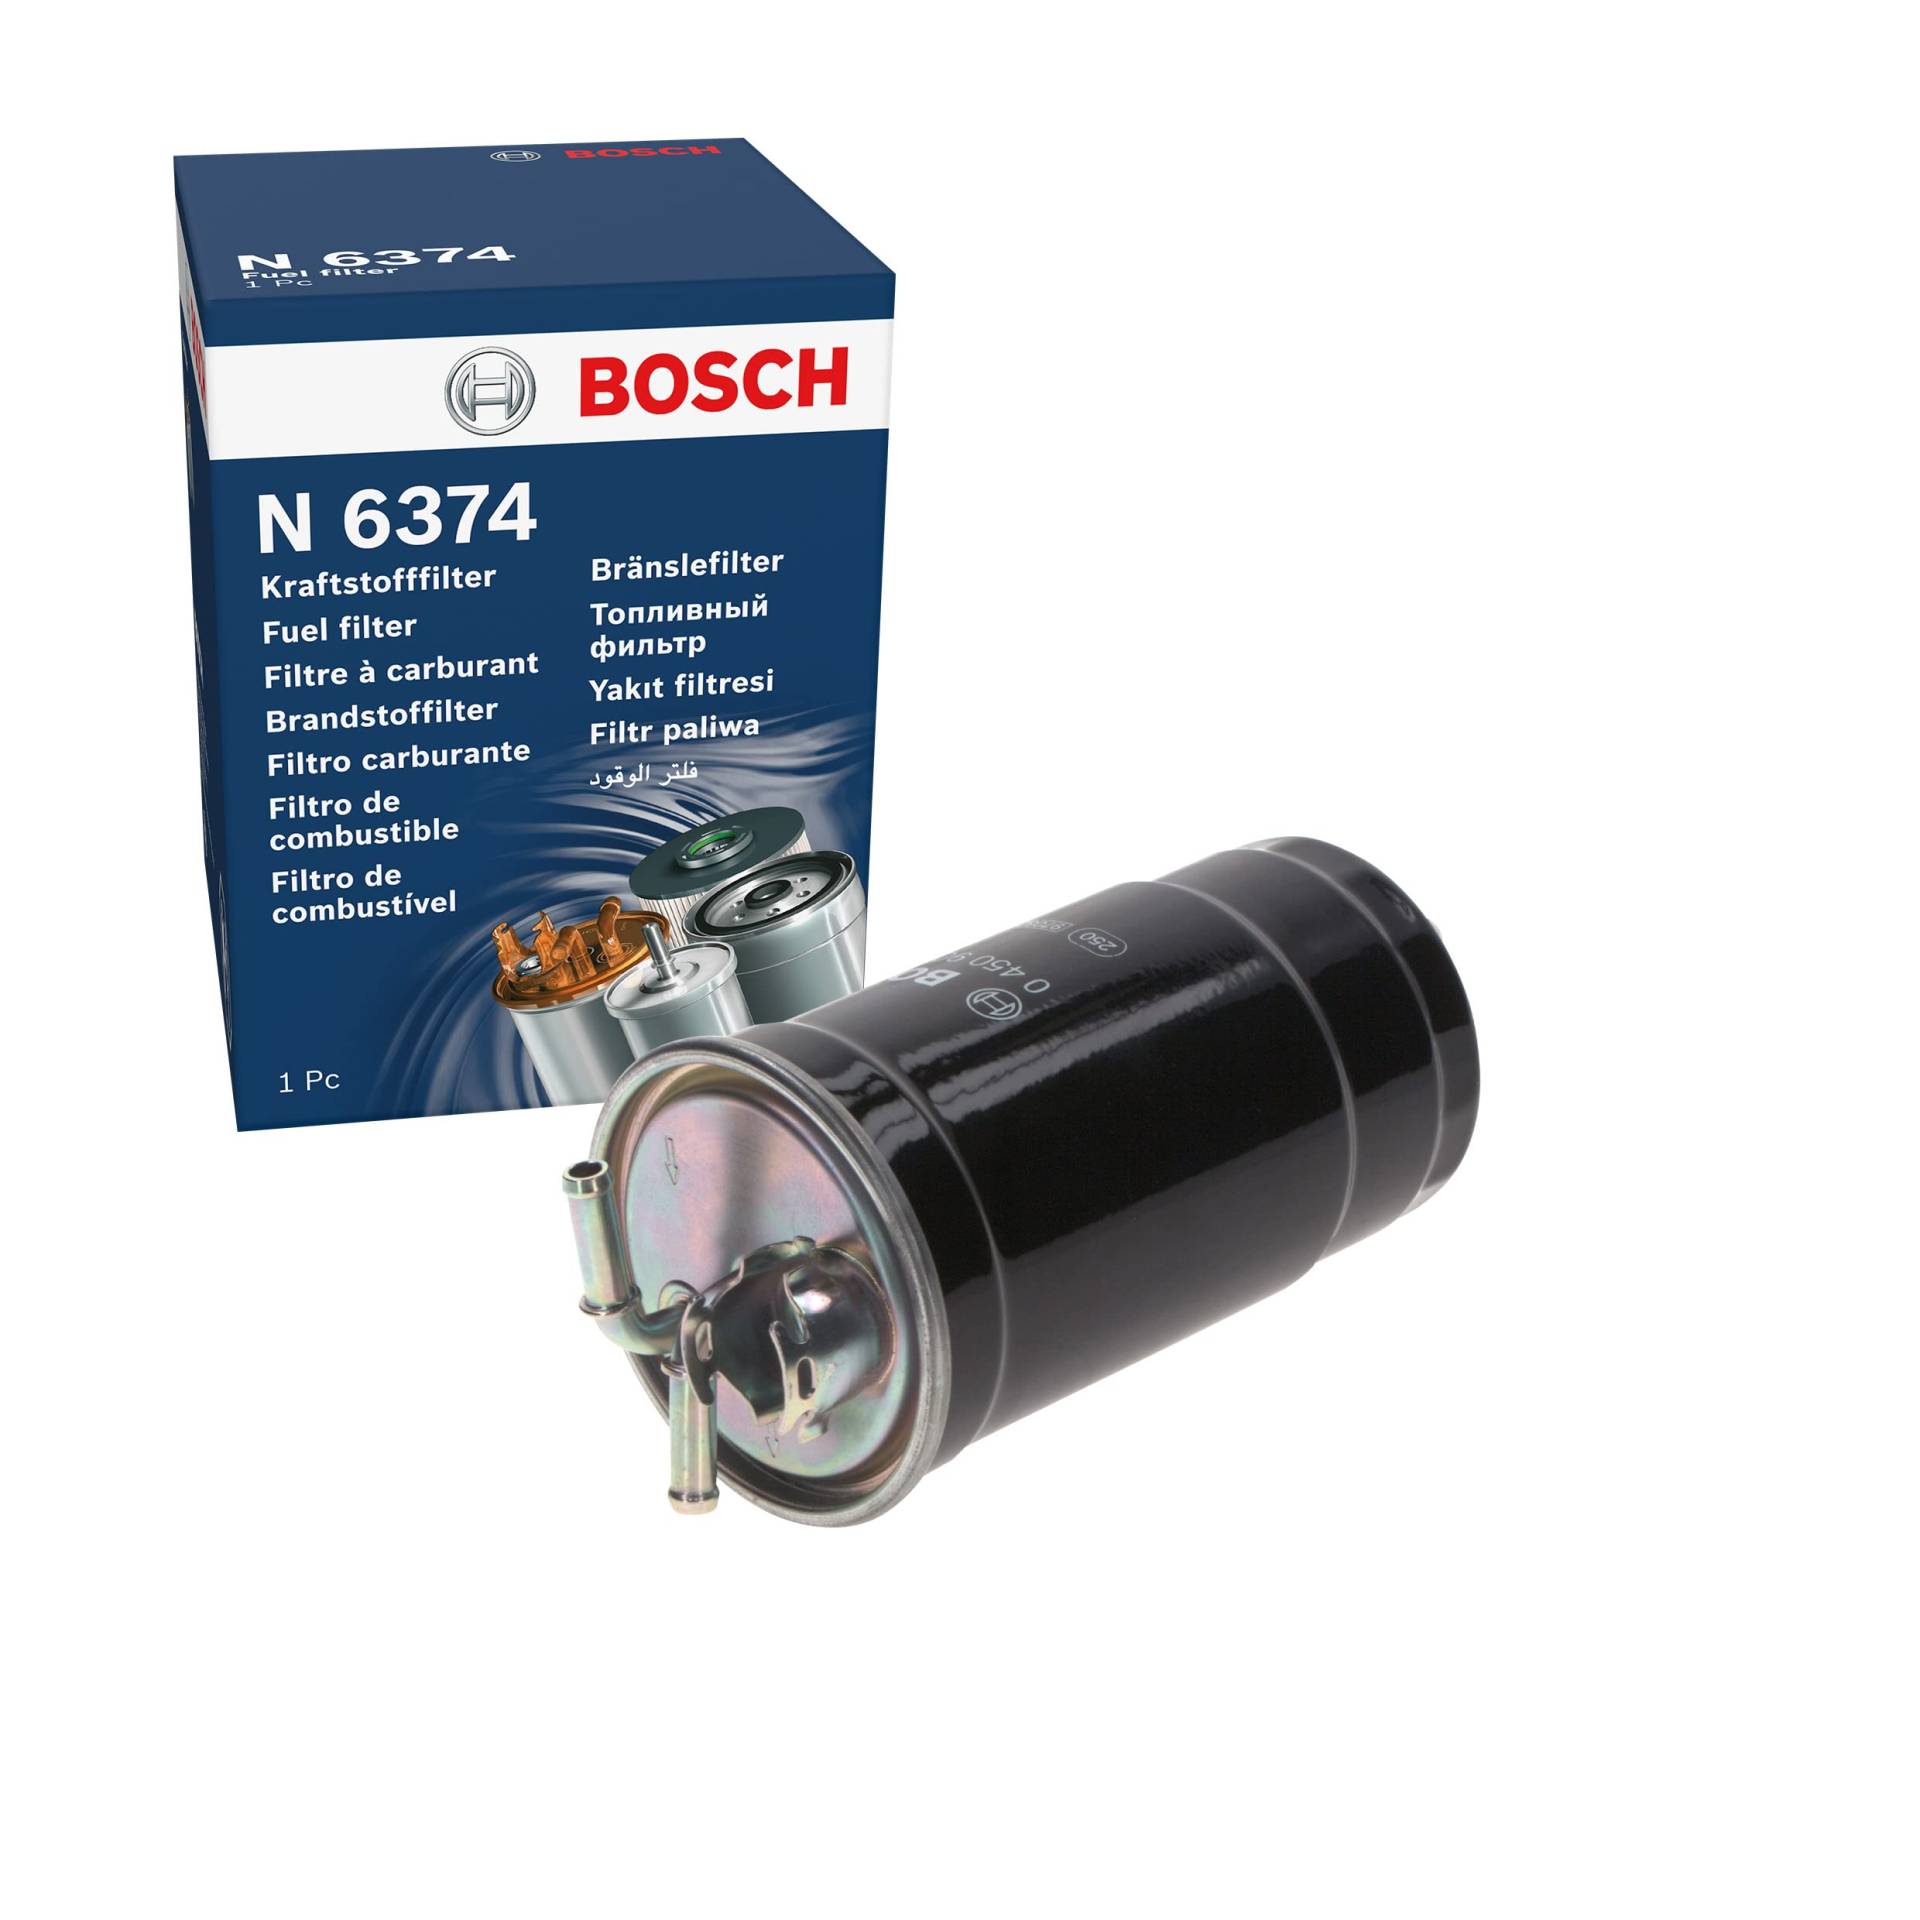 Bosch N6374 - Dieselfilter Auto von Bosch Automotive